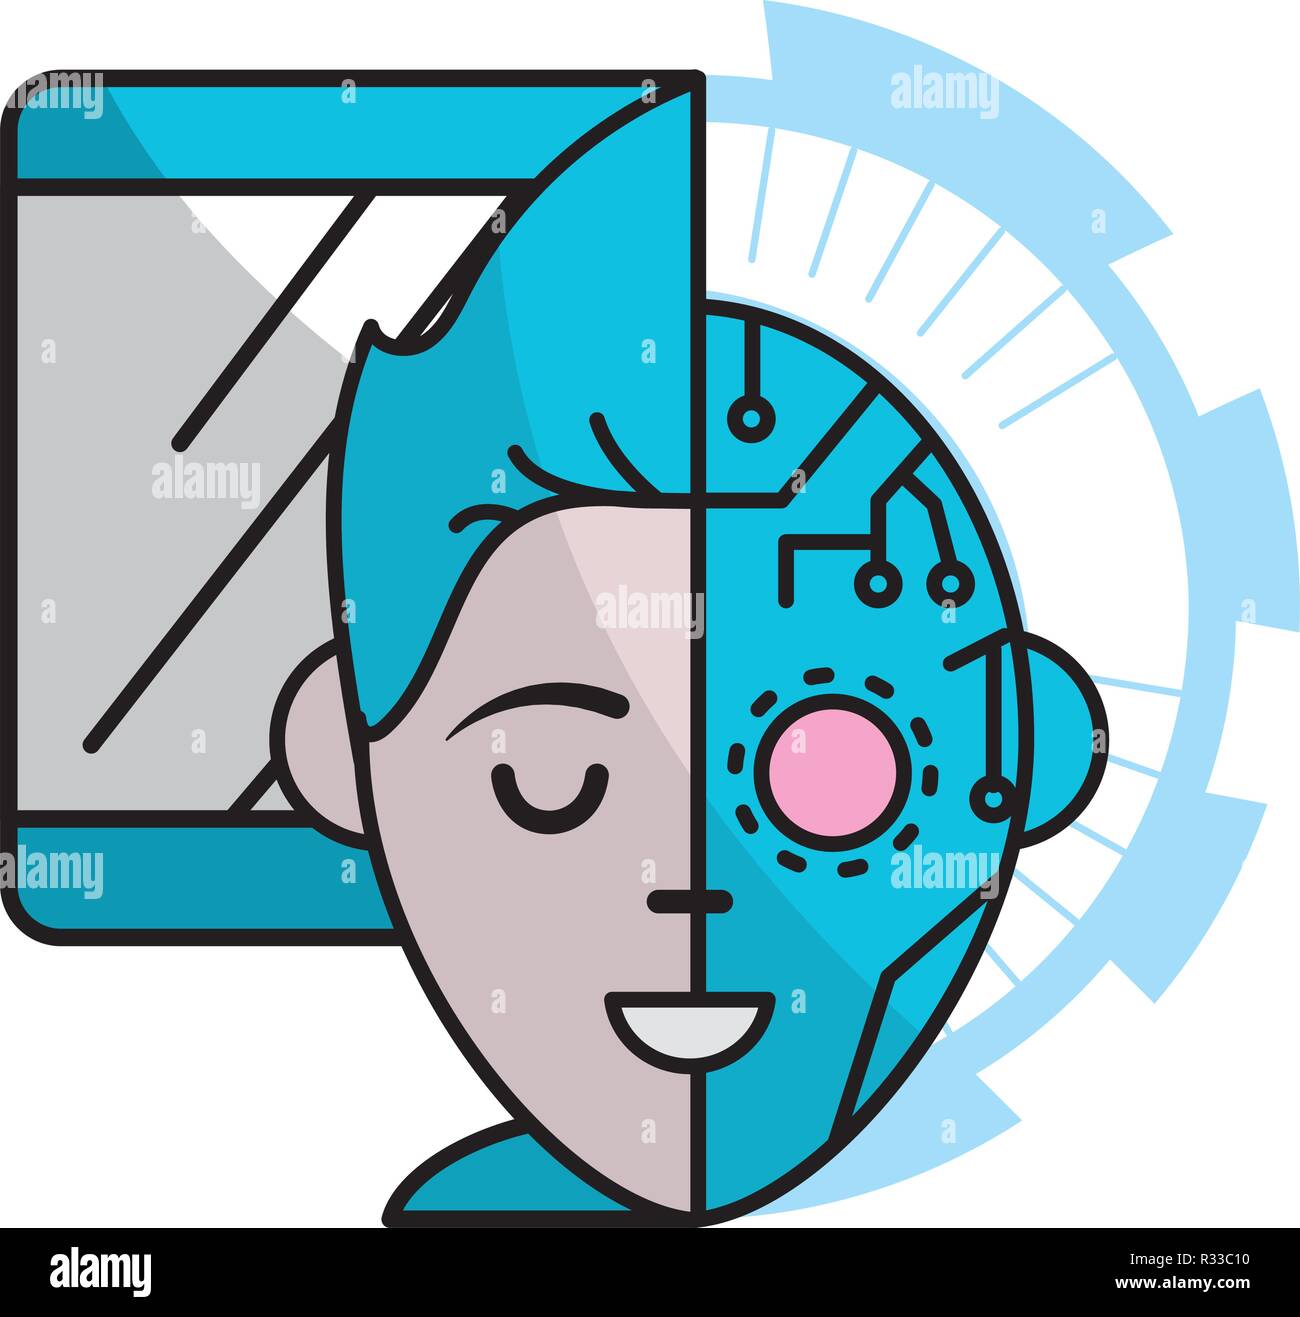 Technik Computer Bildschirm mit digitalen und robotic Gesicht mit einem halb menschliches Gesicht cartoon Vector Illustration graphic design Stock Vektor